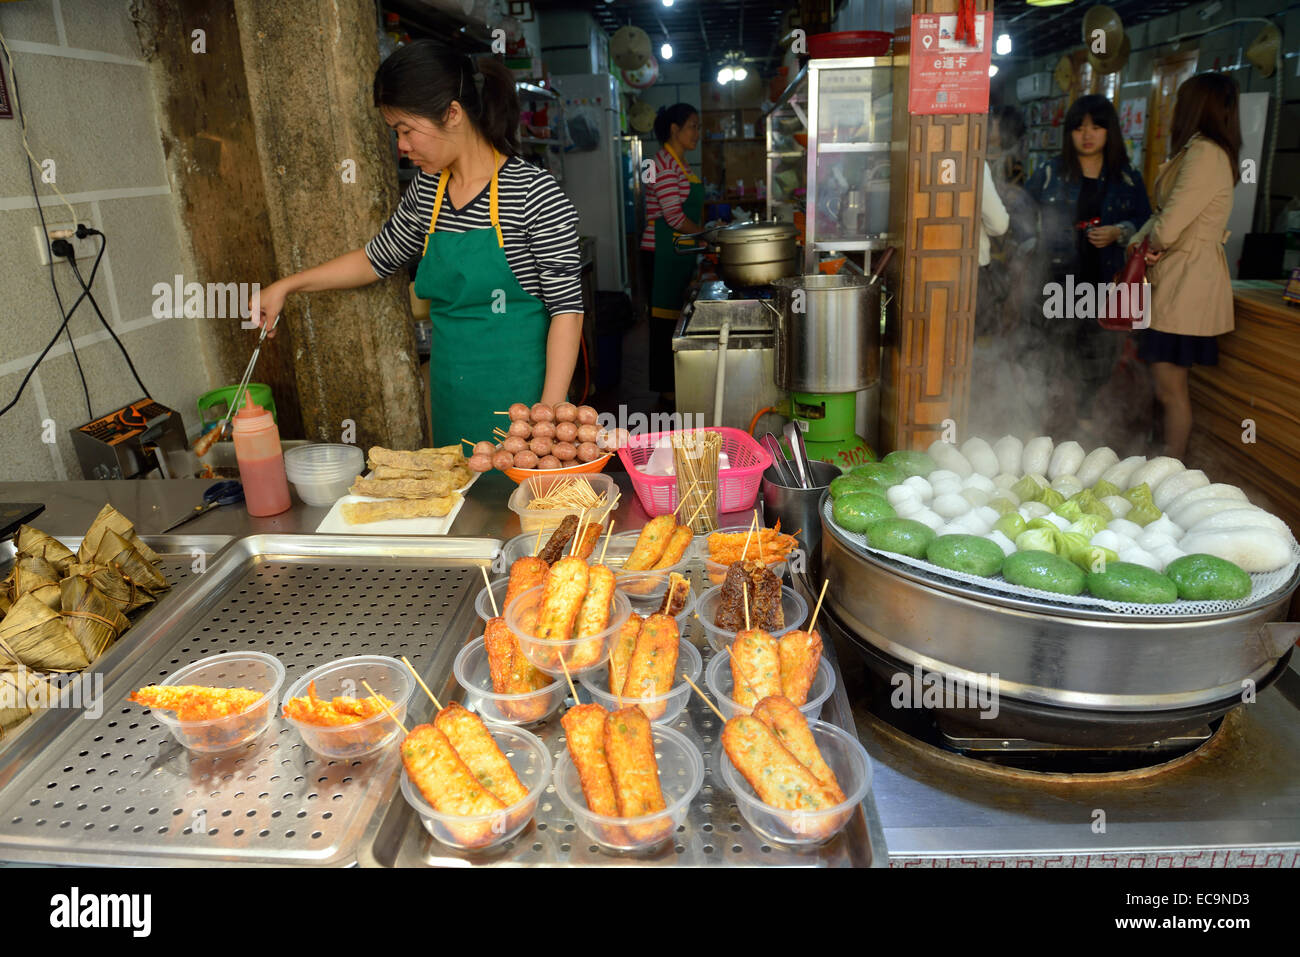 Snack on sale in Xiamen Zengcuoan. 2014 Stock Photo